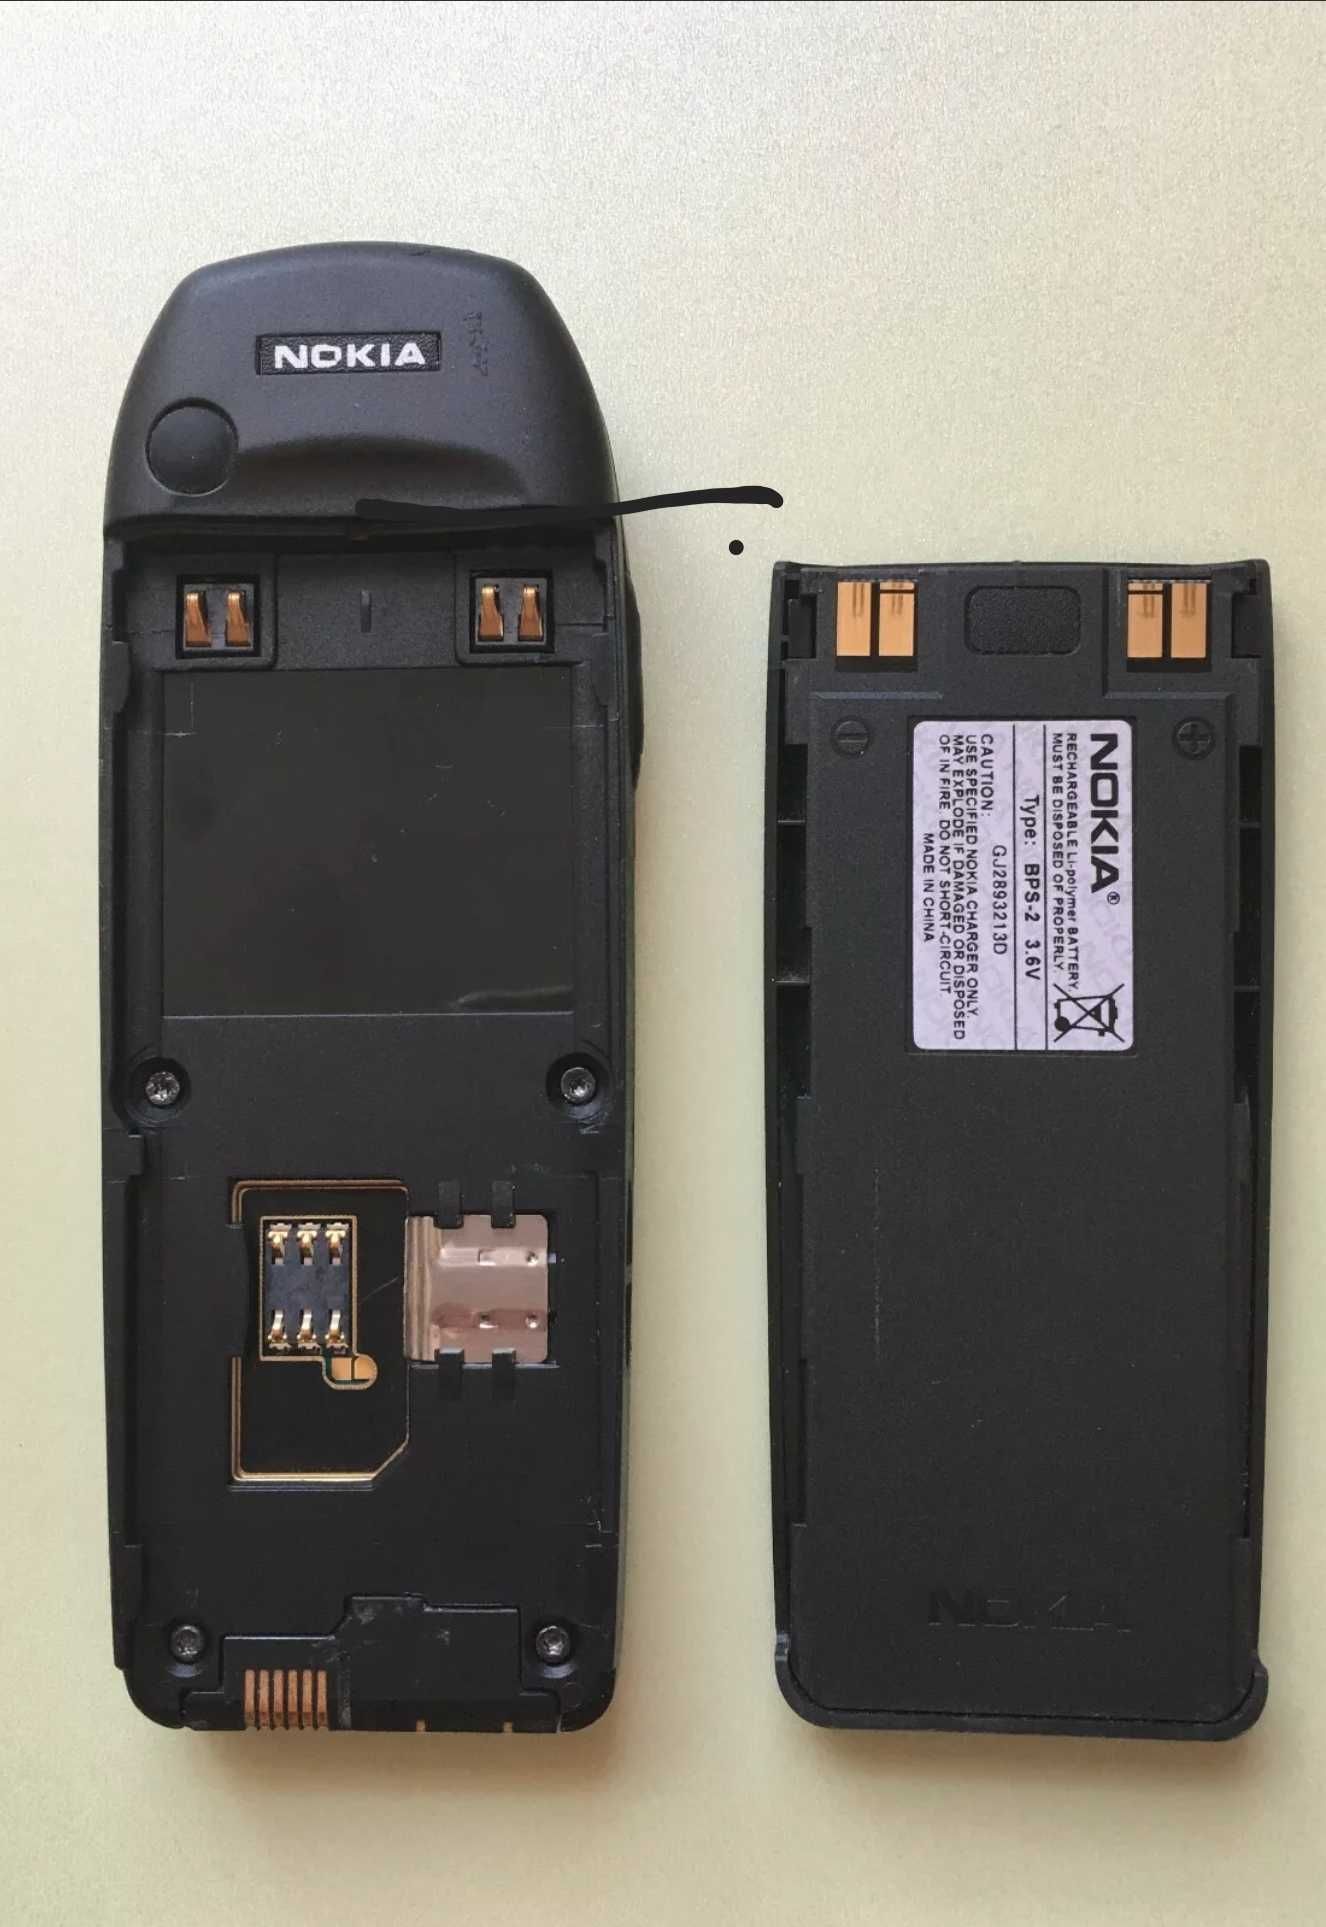 Nokia 6310i in stare impecabila